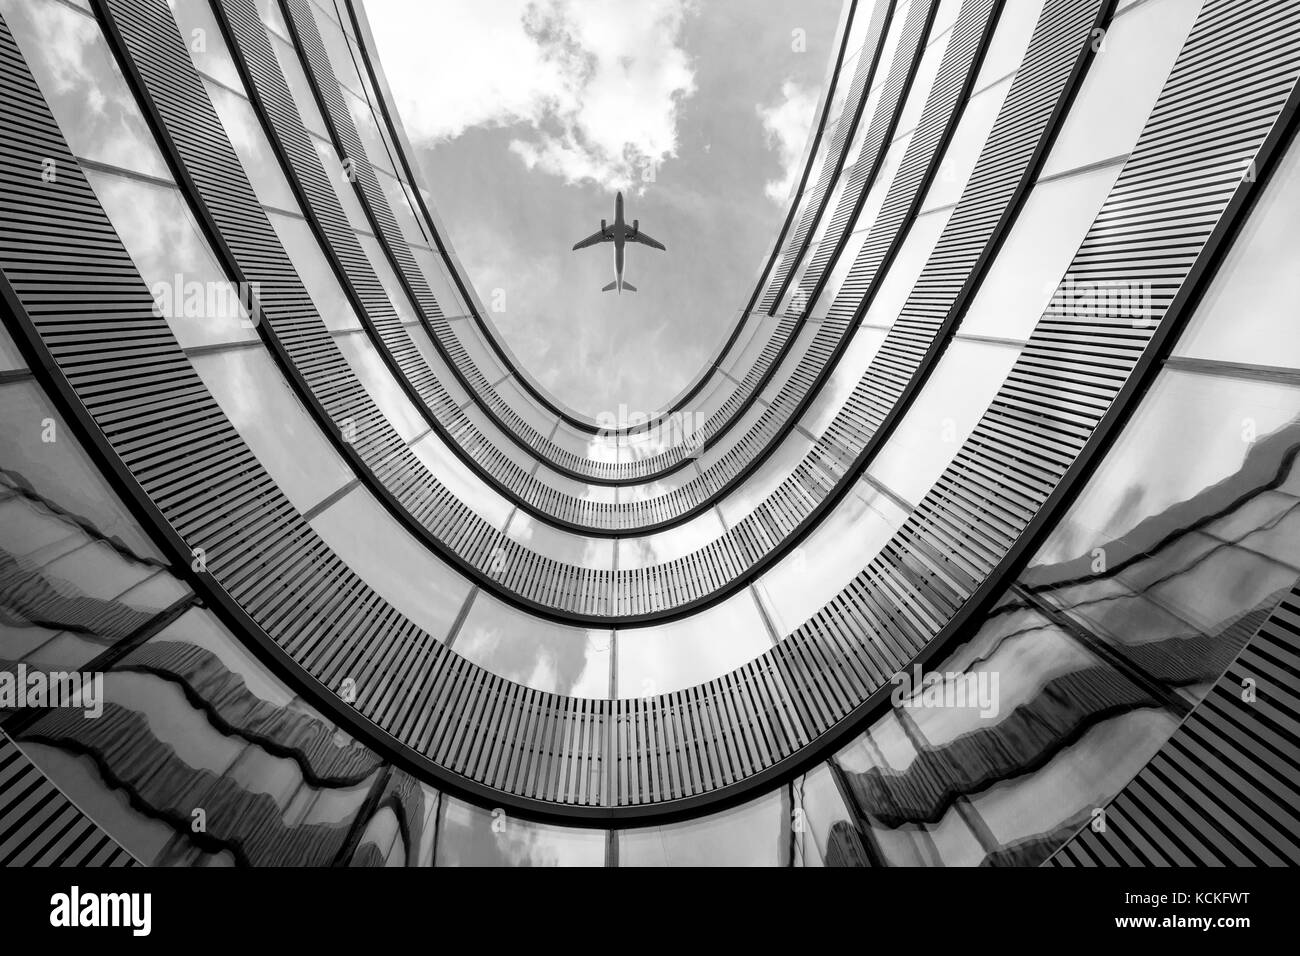 Avion en vol et de l'architecture moderne construction abstraite en noir et blanc à la photo Banque D'Images